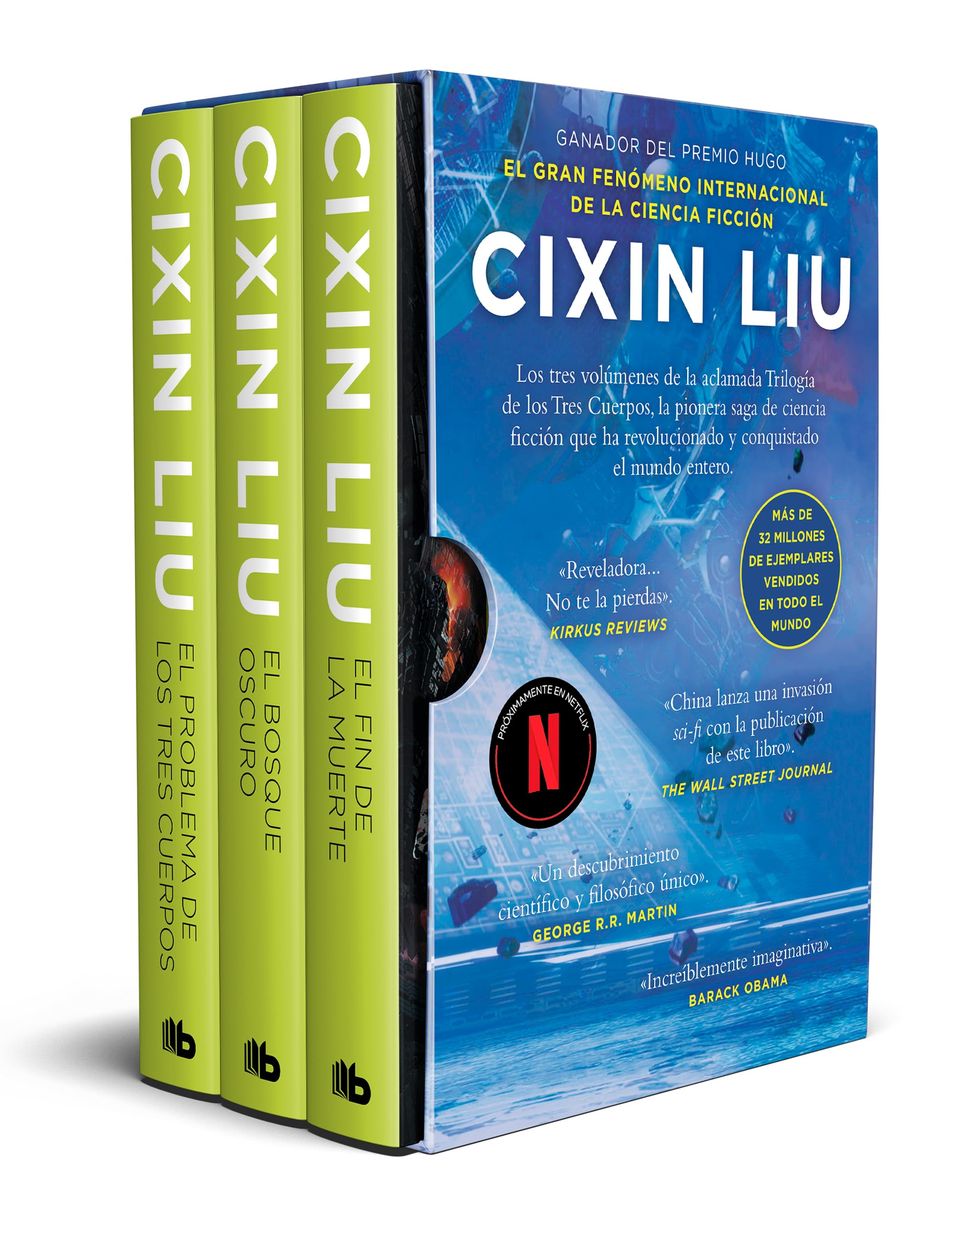 'Trilogía de los tres cuerpos' de Cixin Liu